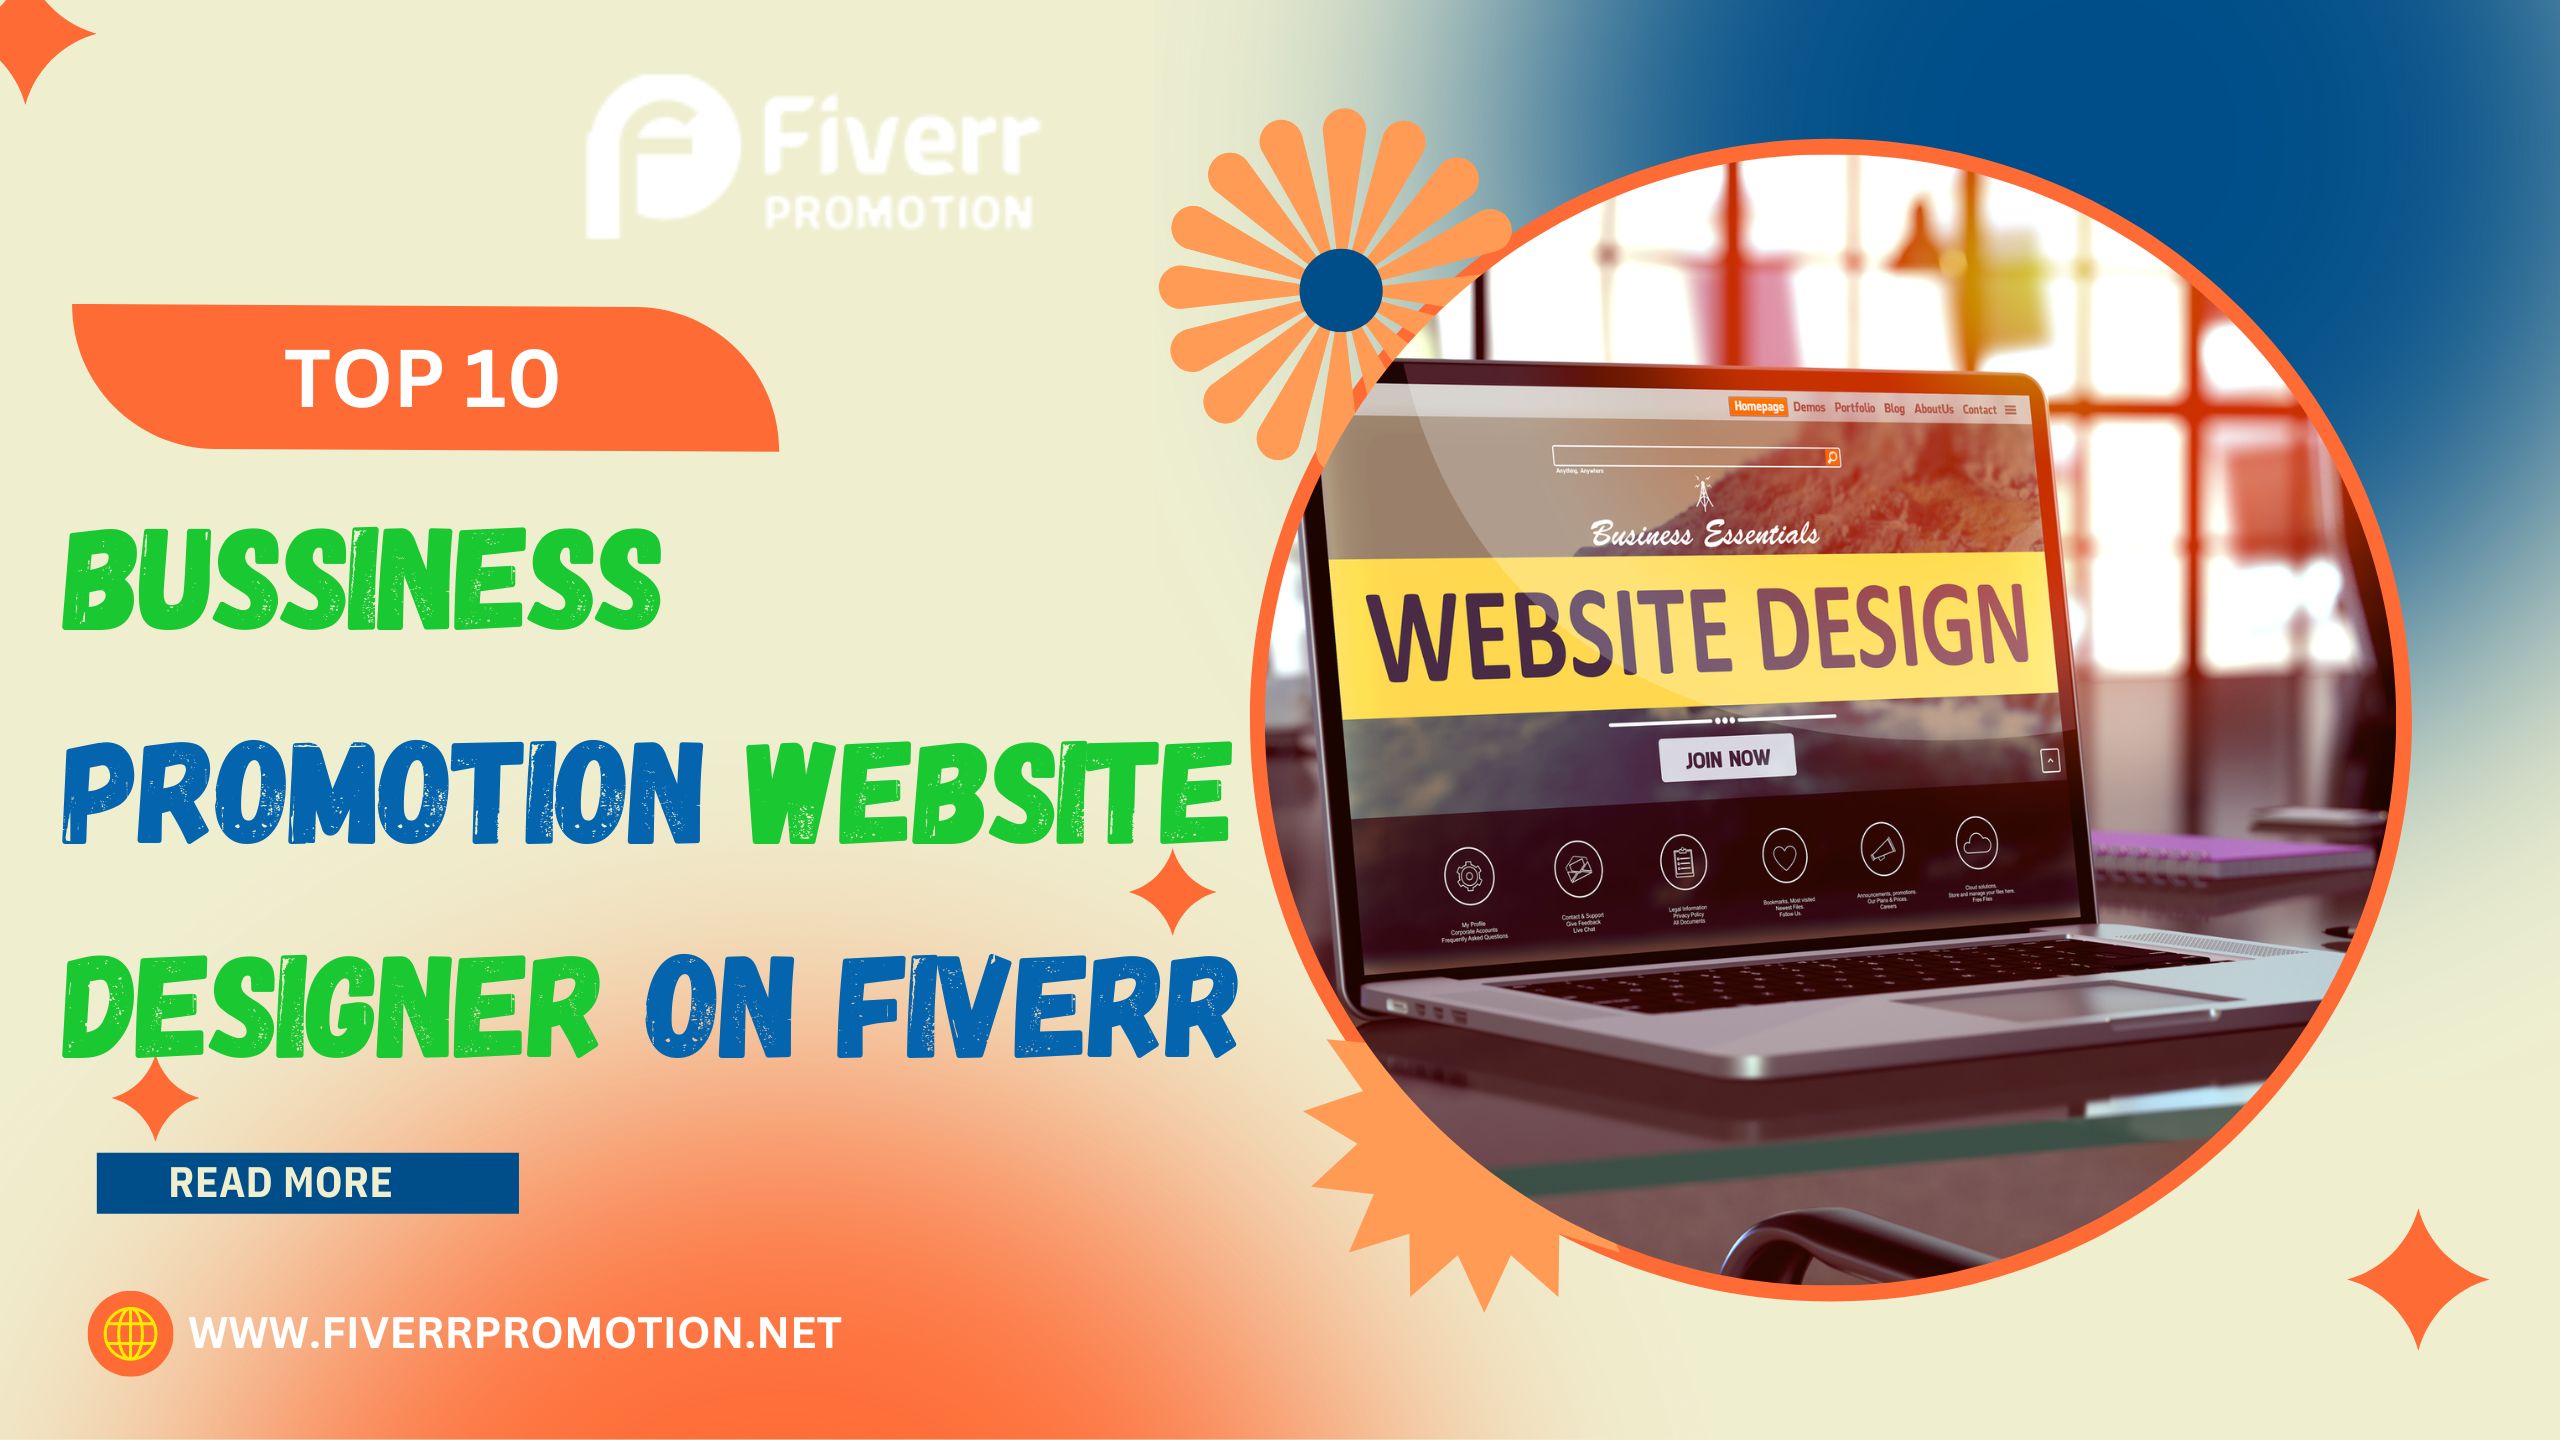 Top 10 Bussiness Promotion Website Designer on Fiverr